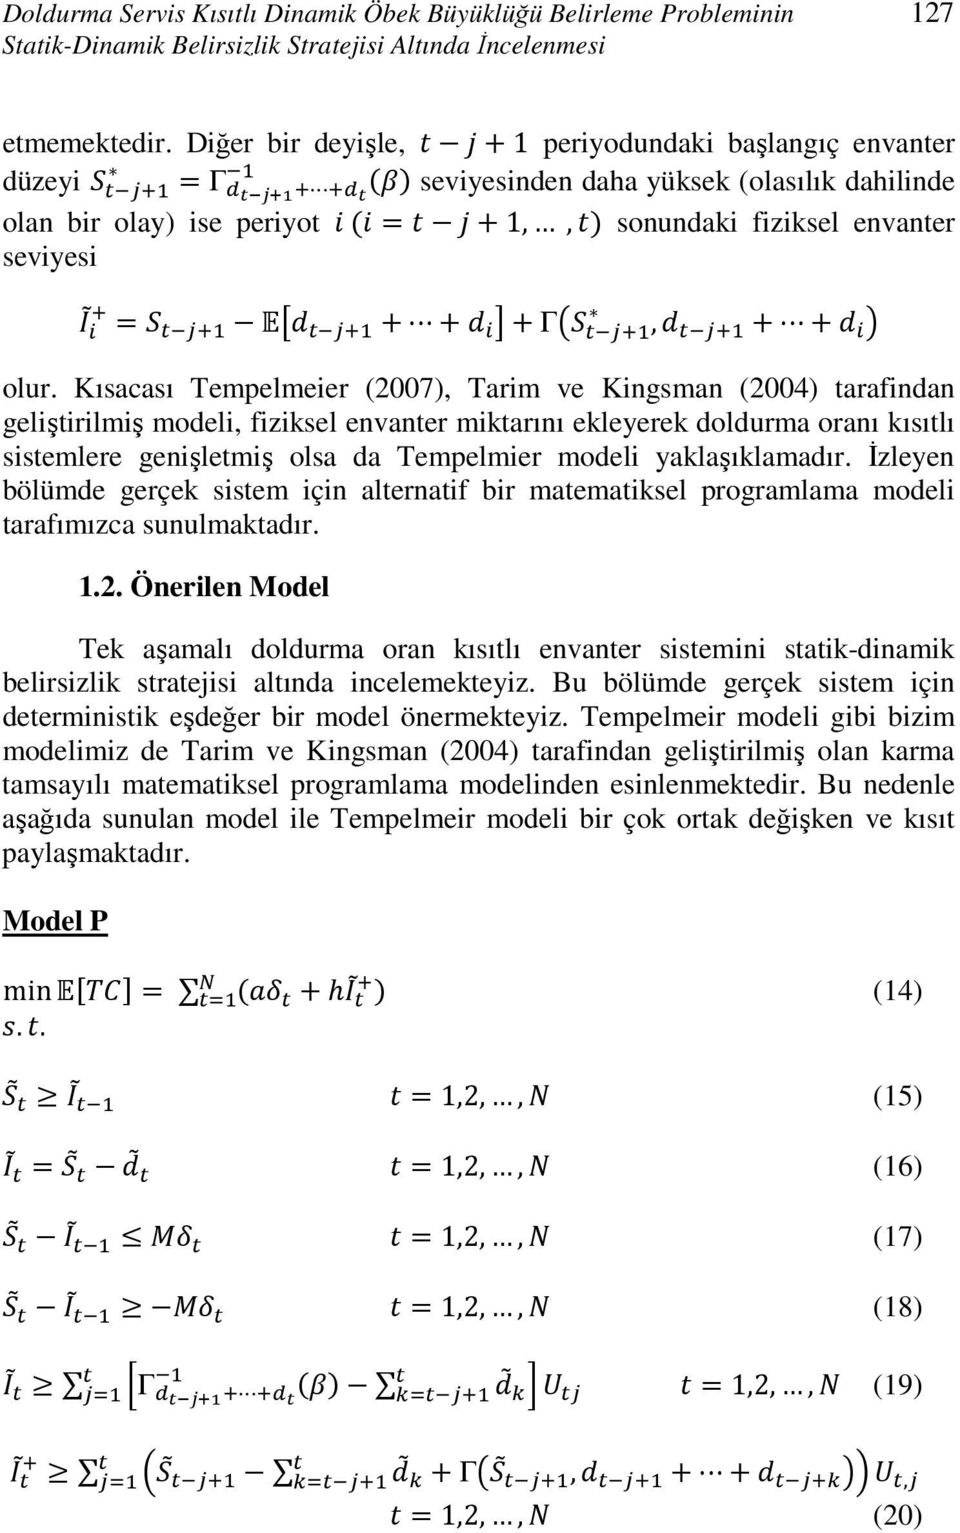 Kısacası Tempelmeier (2007), Tarim ve Kingsman (2004) tarafindan geliştirilmiş modeli, fiziksel envanter miktarını ekleyerek doldurma oranı kısıtlı sistemlere genişletmiş olsa da Tempelmier modeli